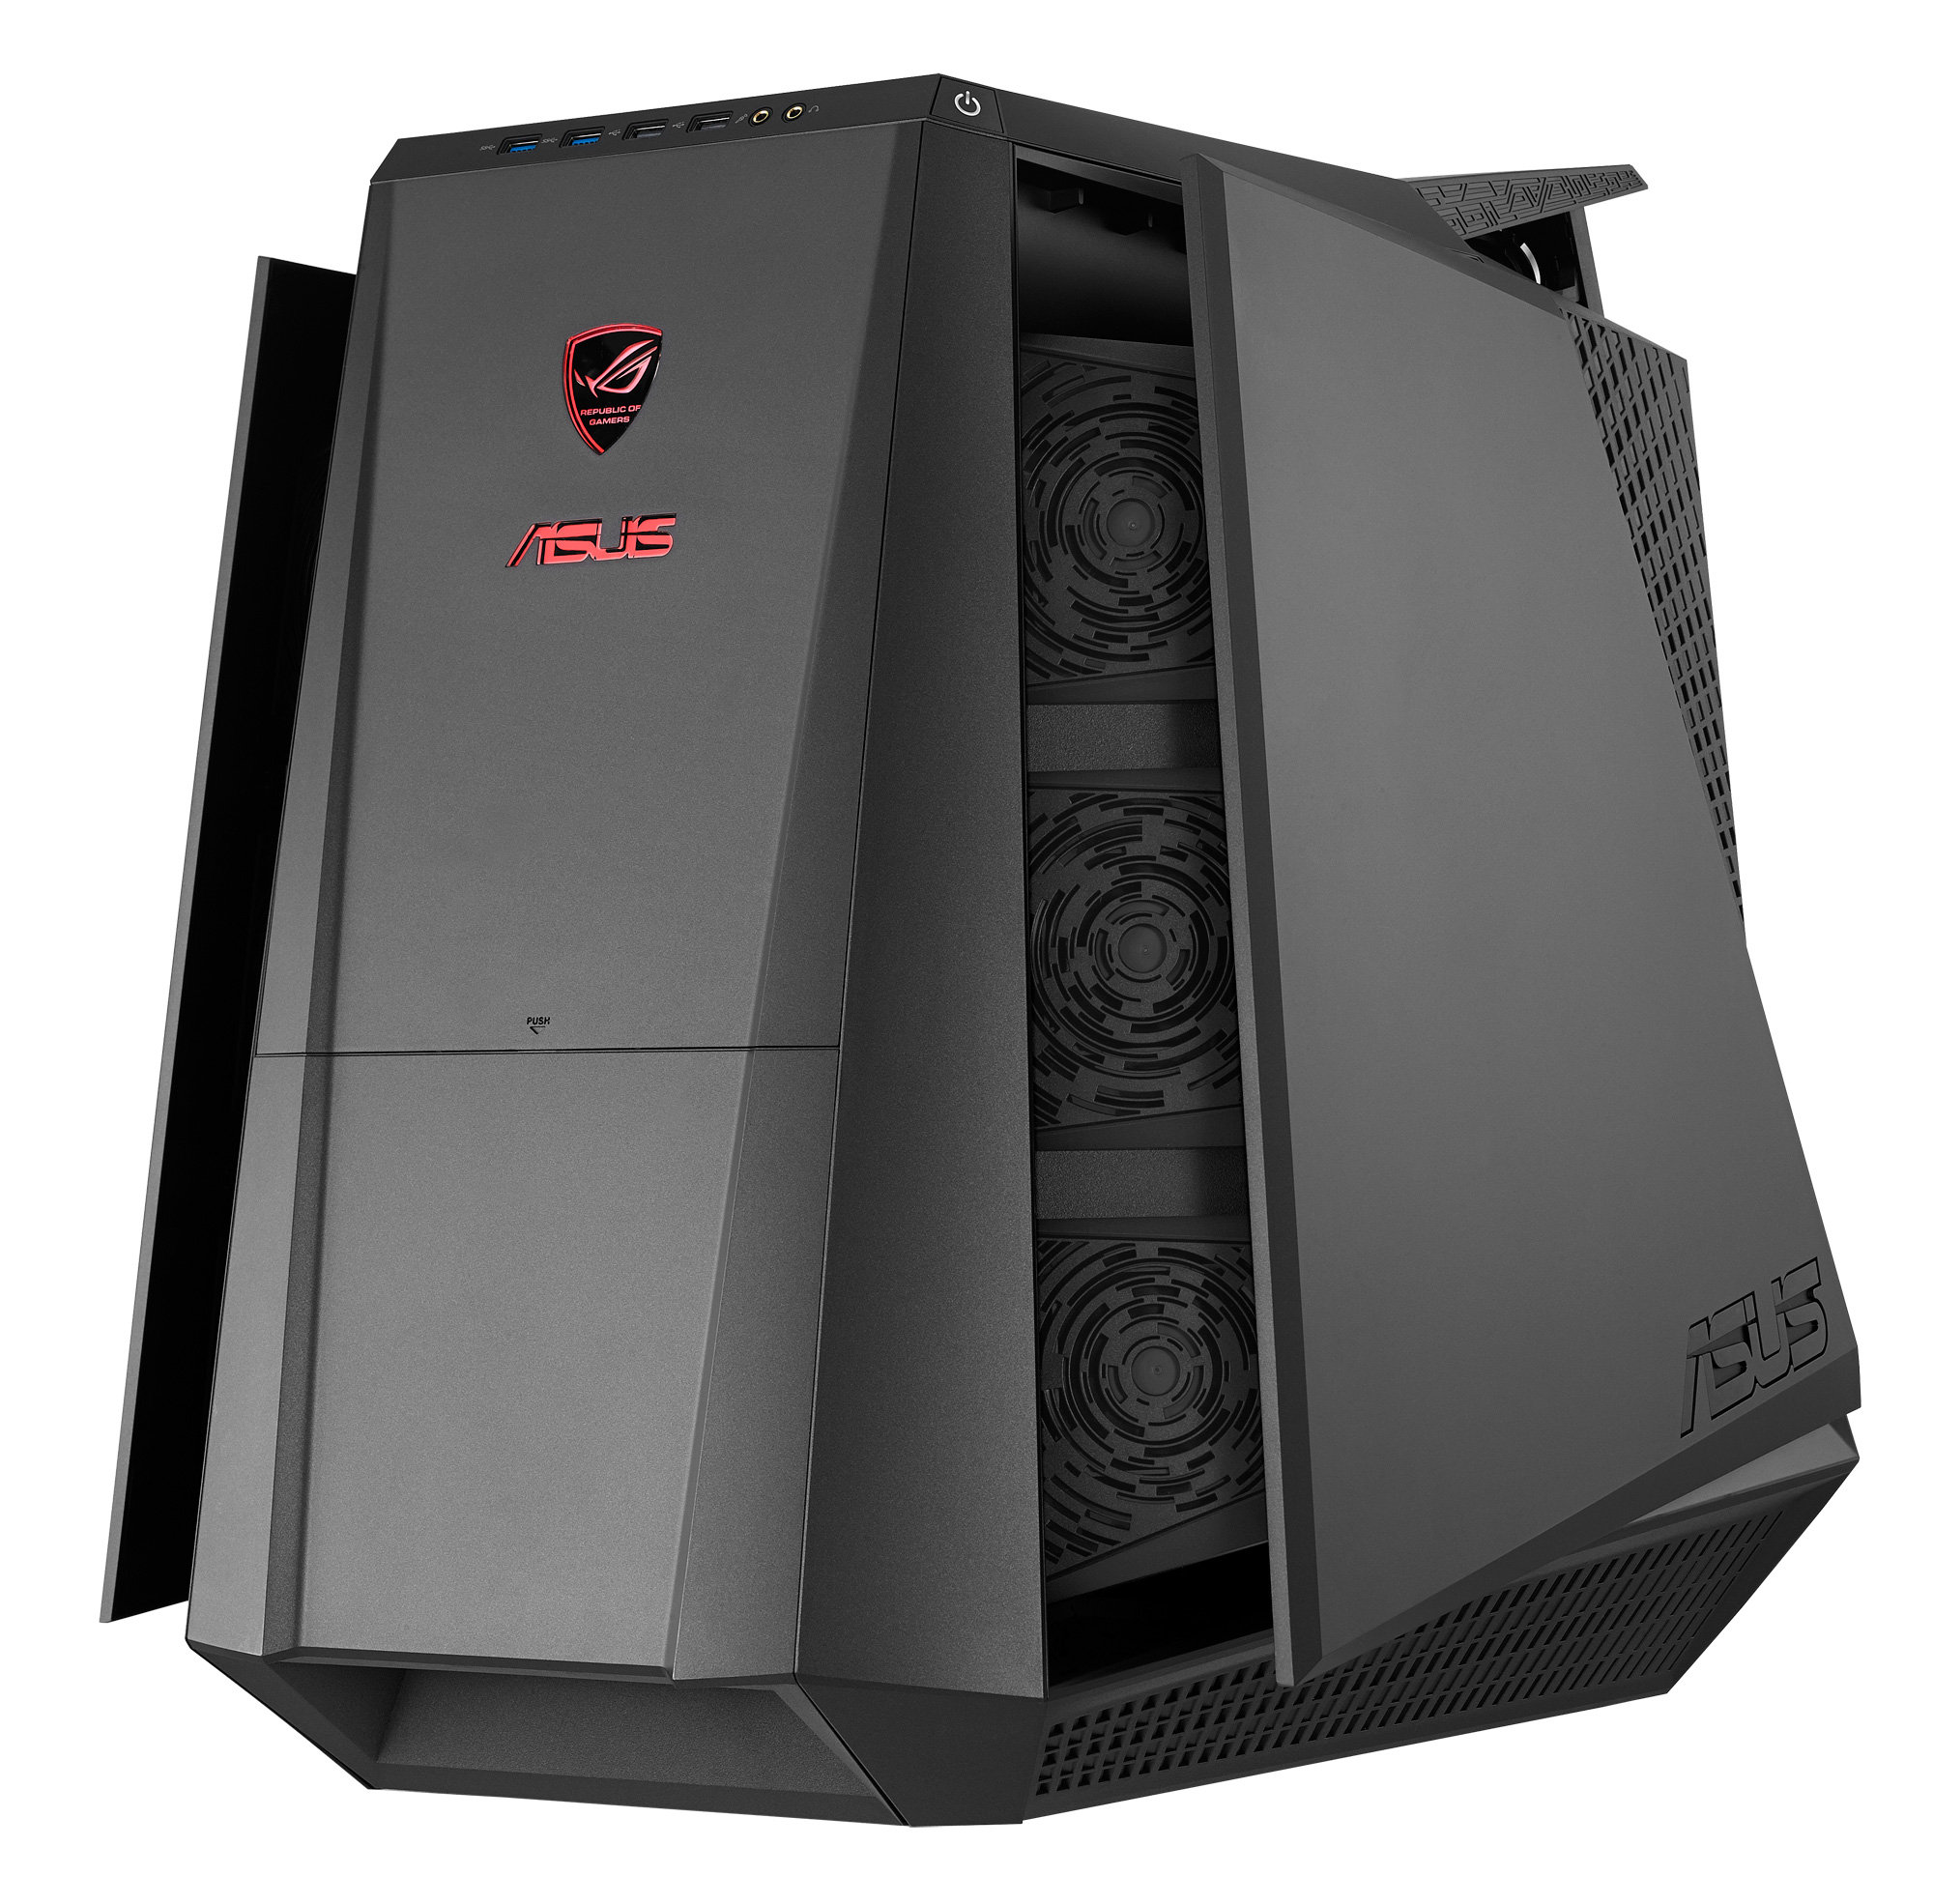 Asus+Gaming+PC ASUS Unveils ROG Tytan G70 Gaming Desktop PC - Republic ...